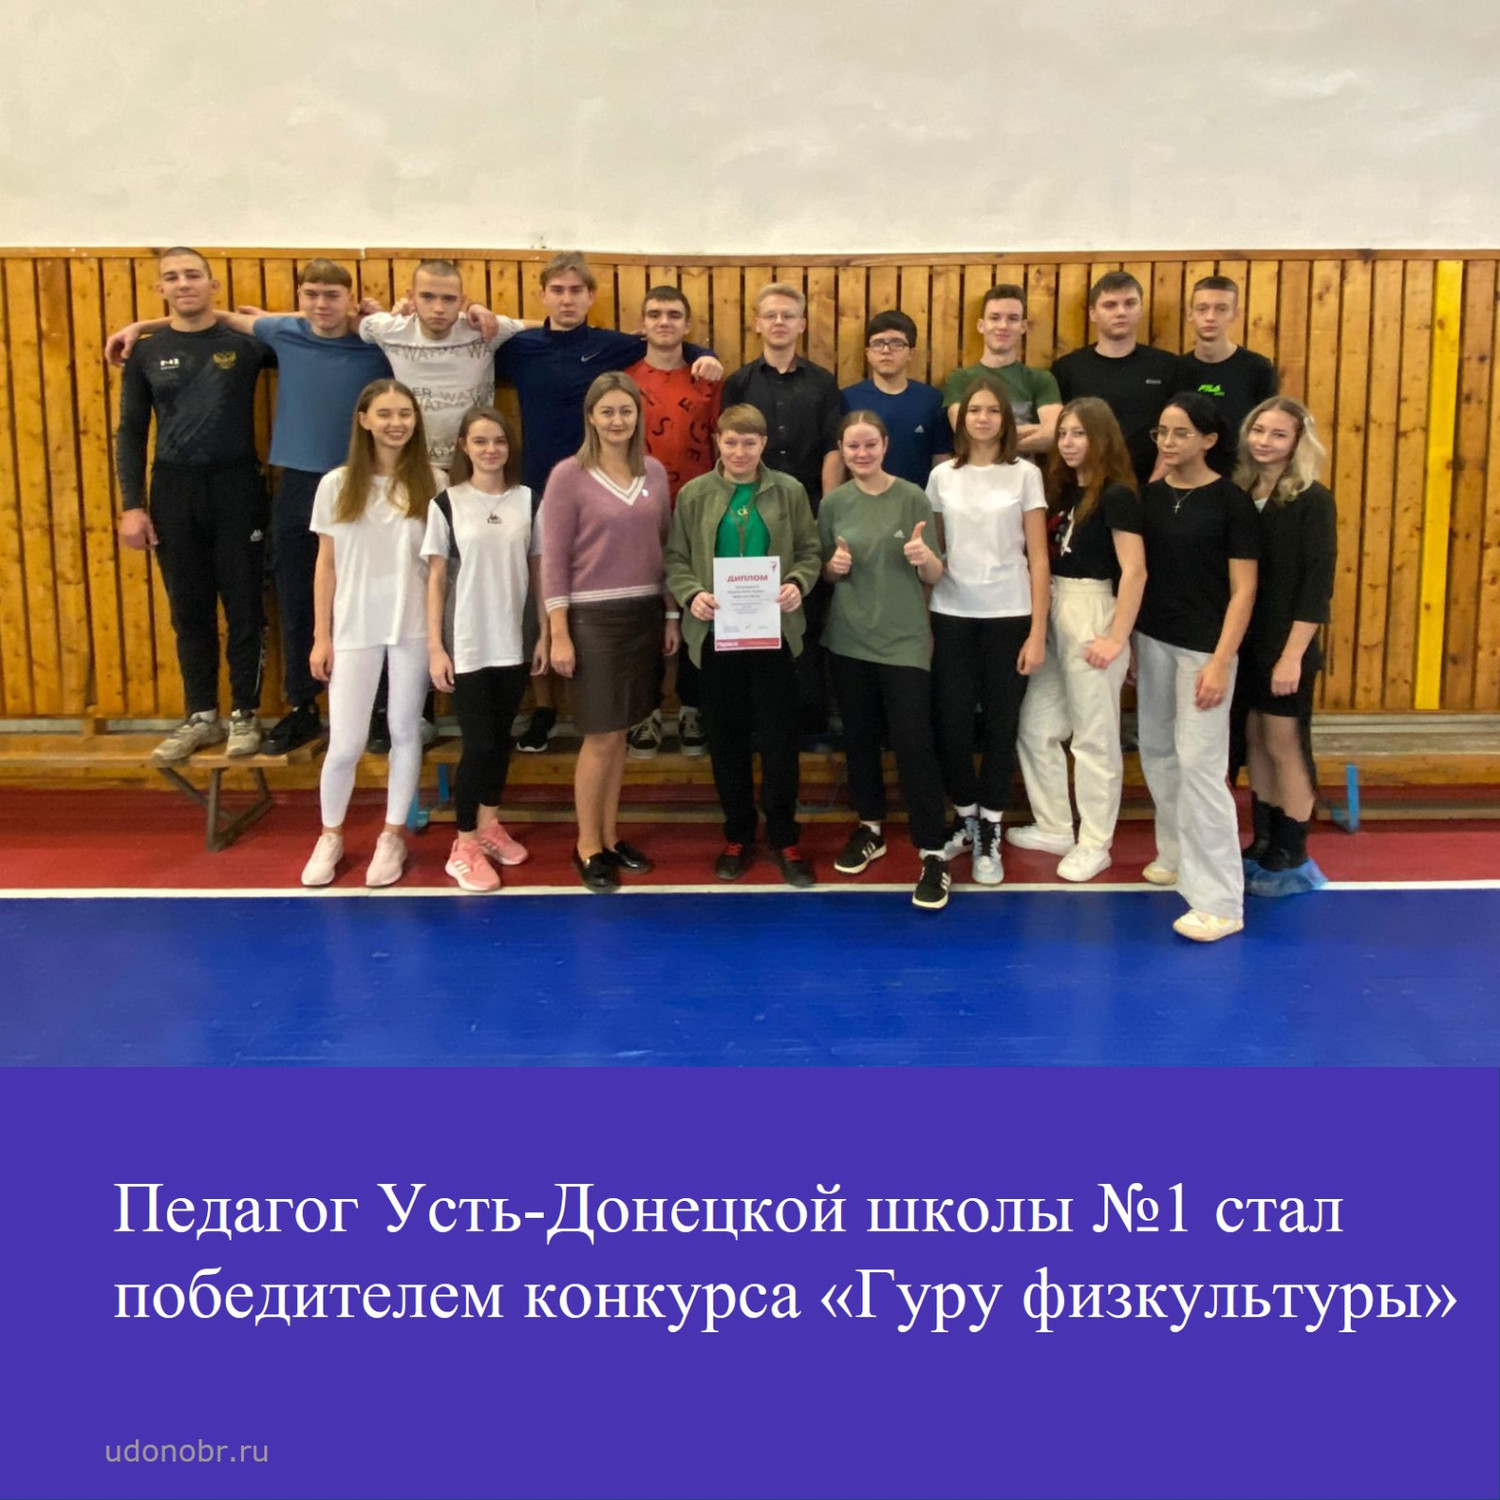 Педагог Усть-Донецкой школы №1 стал победителем конкурса «Гуру физкультуры»